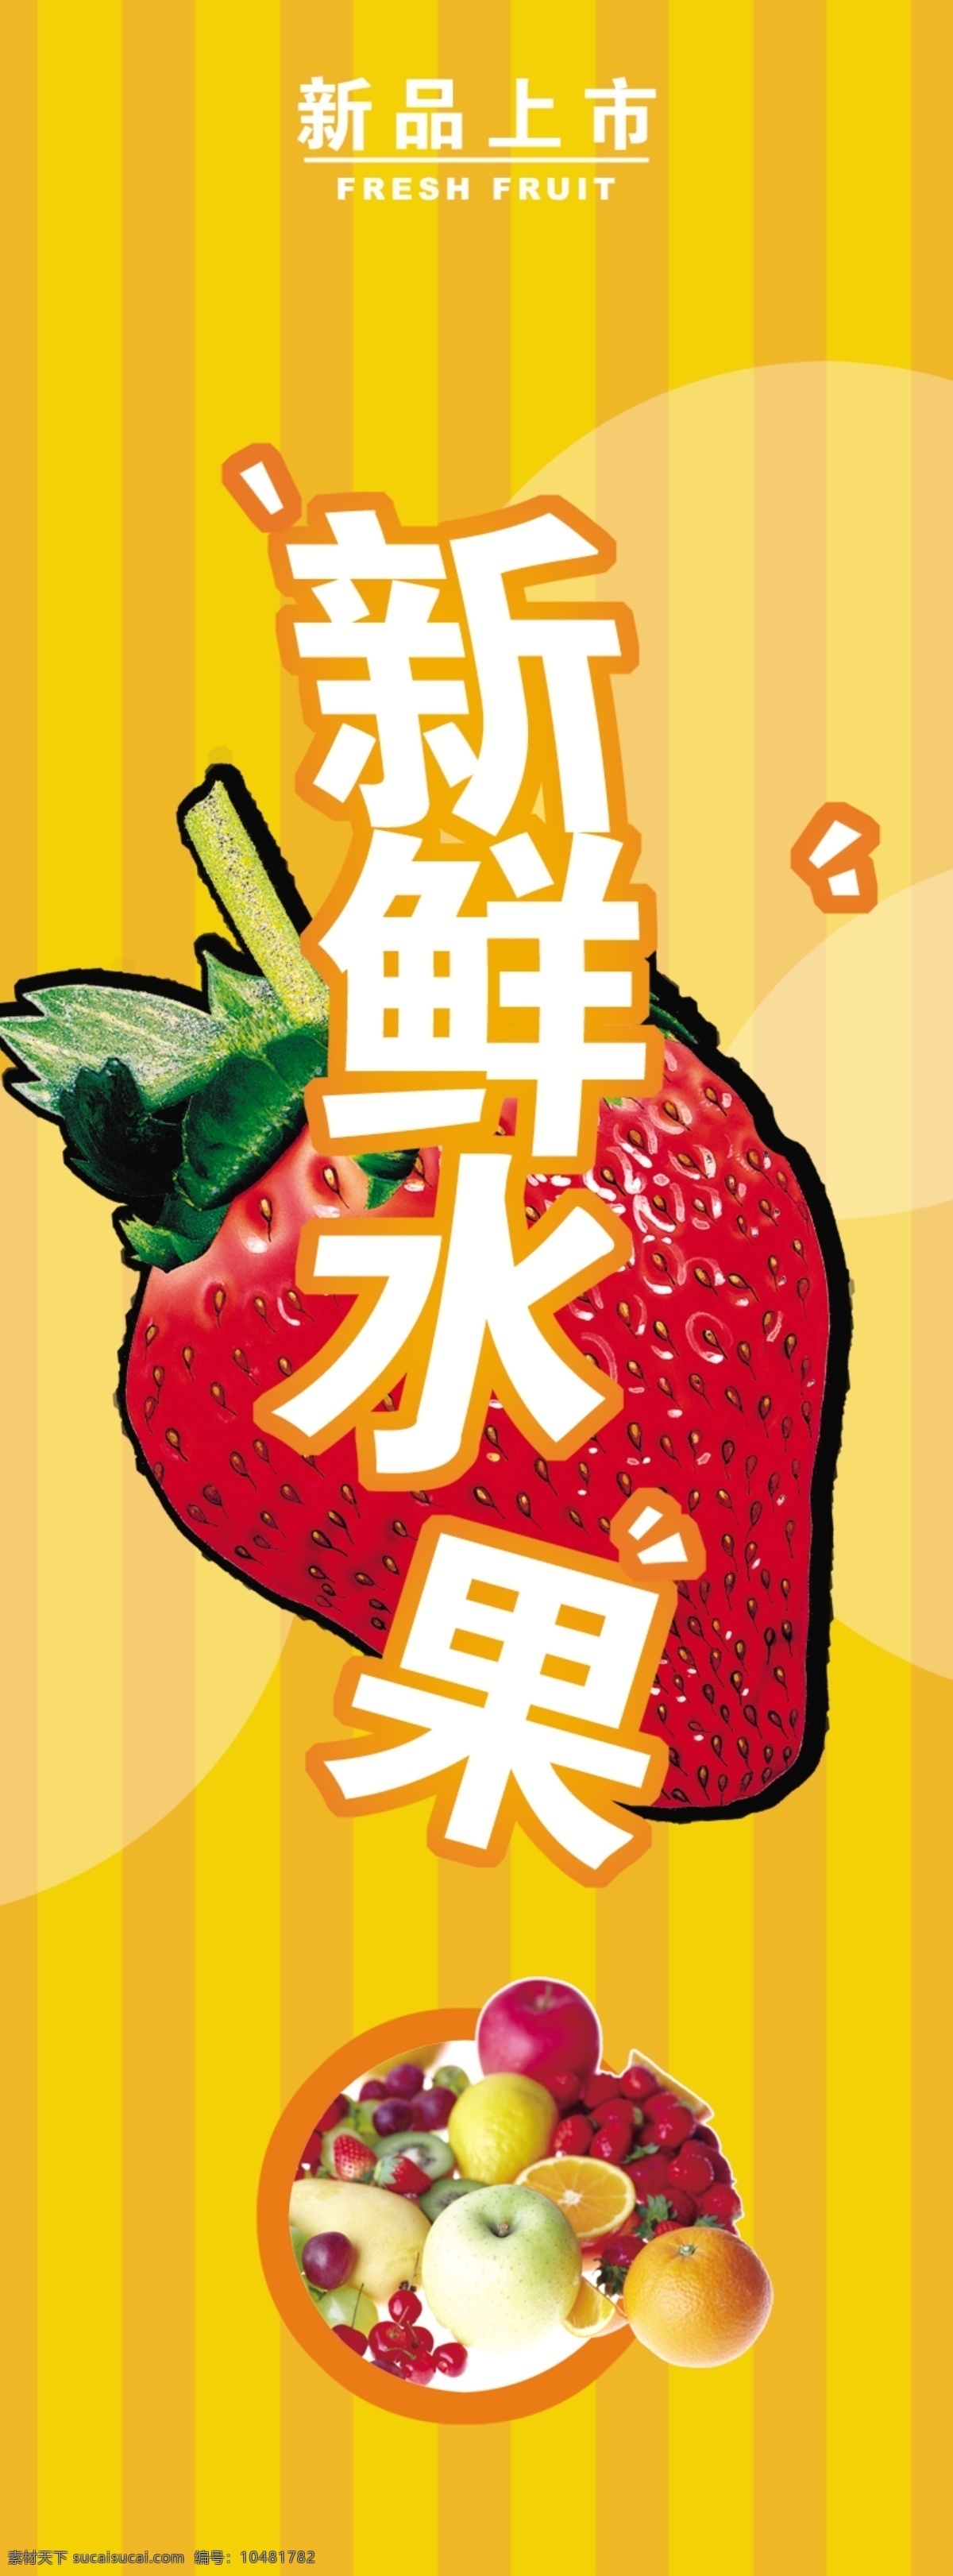 草莓 广告设计模板 水果 水果广告 新鲜水果 源文件 广告 模板下载 海报 文件 psd源文件 餐饮素材